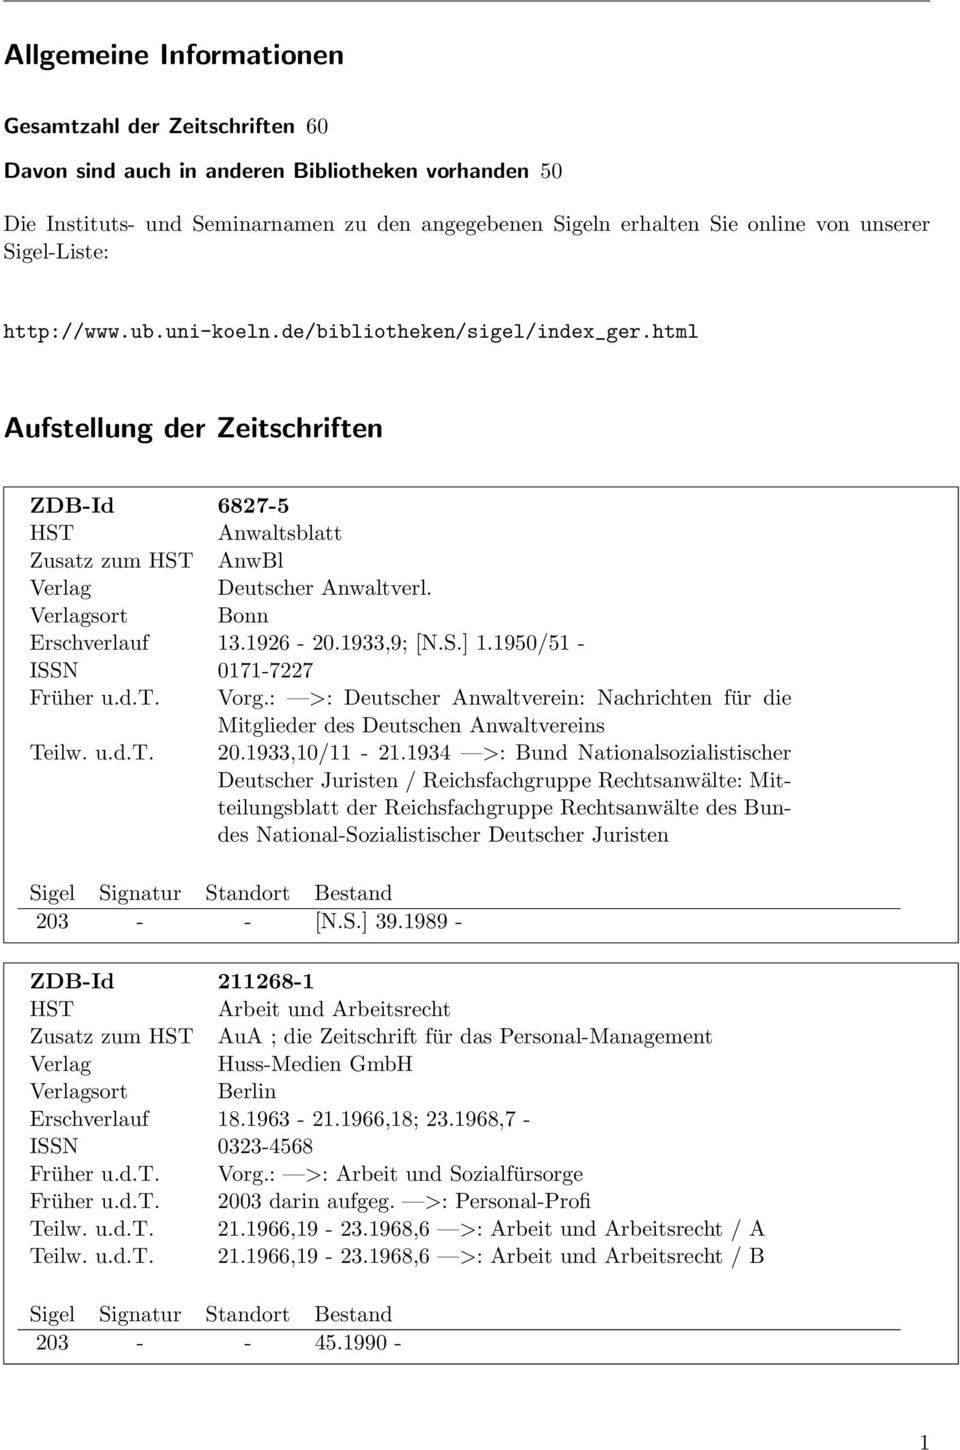 1926-20.1933,9; [N.S.] 1.1950/51 - ISSN 0171-7227 Früher u.d.t. Vorg.: >: Deutscher Anwaltverein: Nachrichten für die Mitglieder des Deutschen Anwaltvereins Teilw. u.d.t. 20.1933,10/11-21.